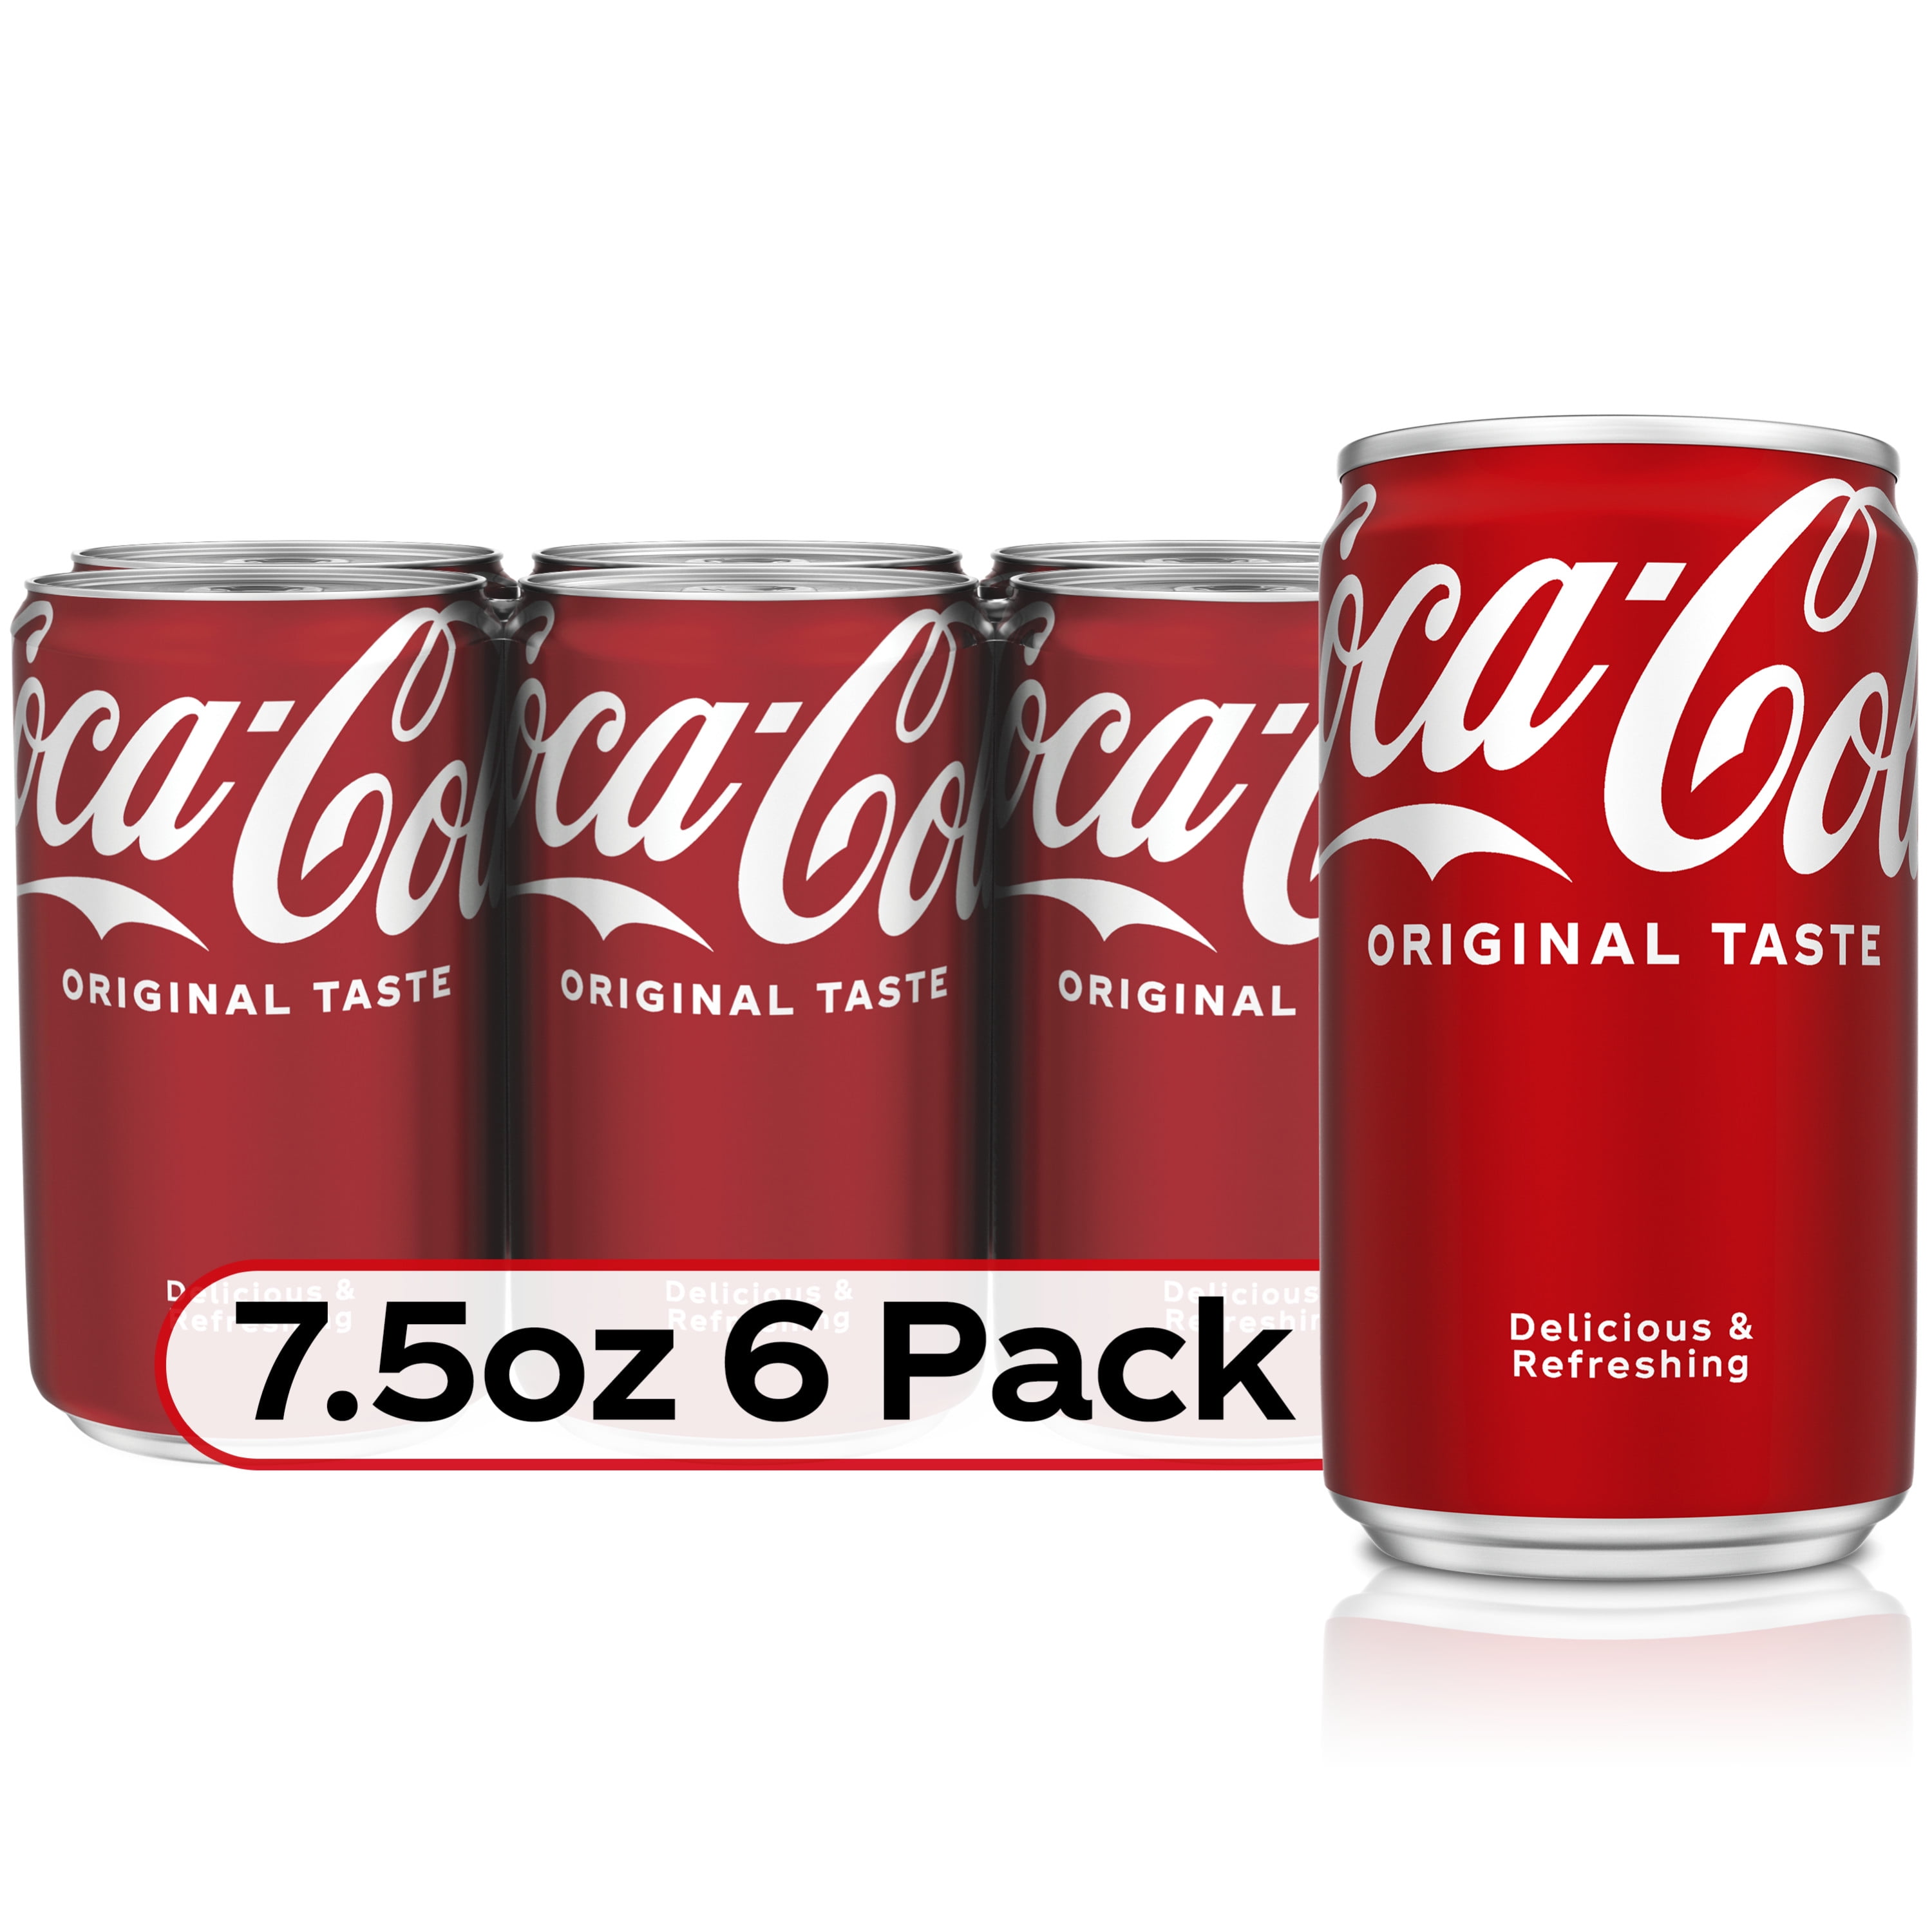 Coca-Cola Vaniglia 8 x 330 ml